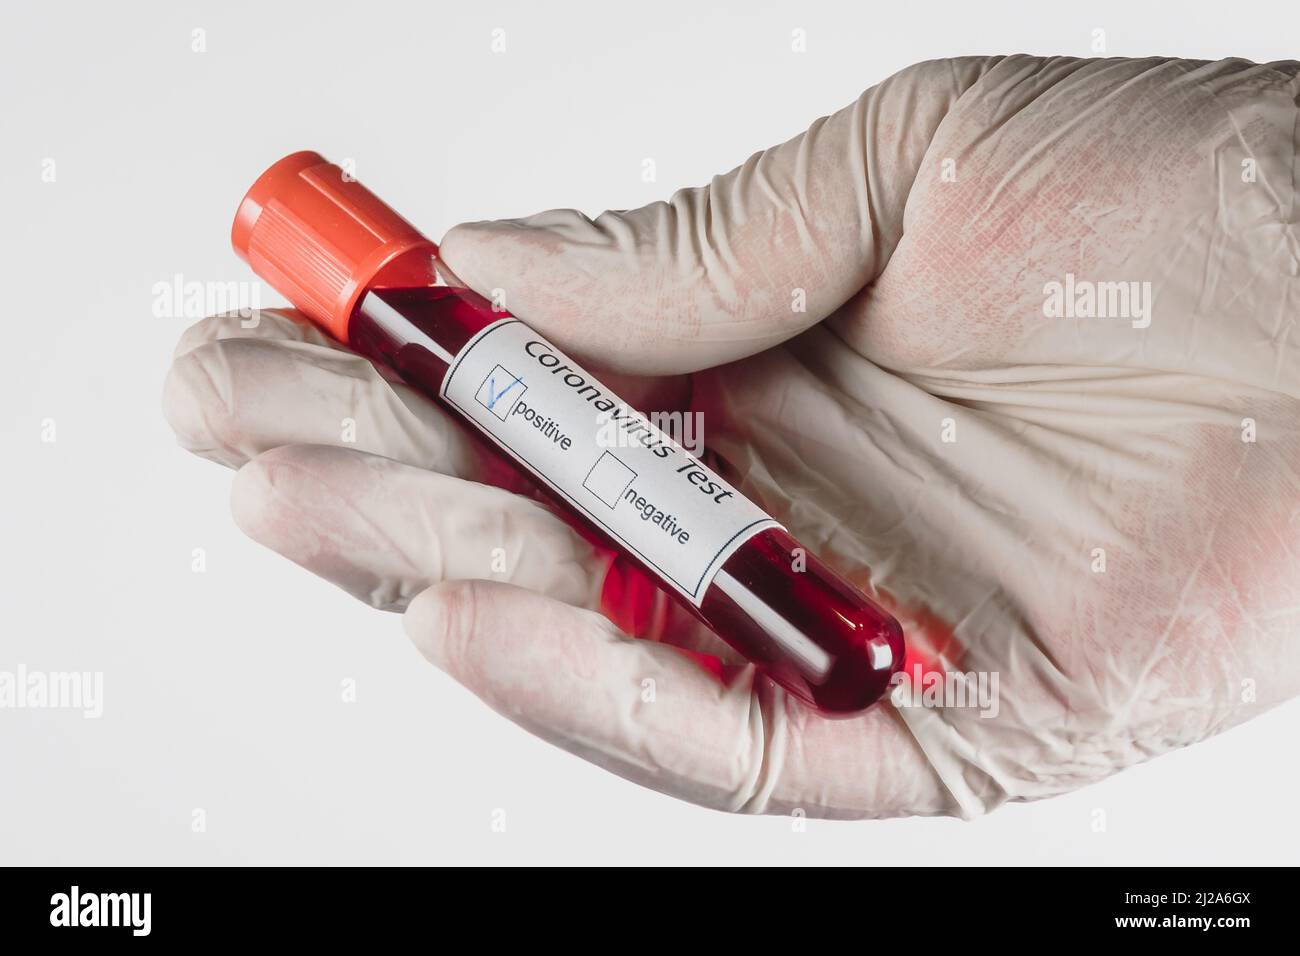 Provetta per vuoto con un campione di sangue con risultato positivo per l'infezione da Covid-19 in mano con un guanto medico su sfondo bianco Foto Stock